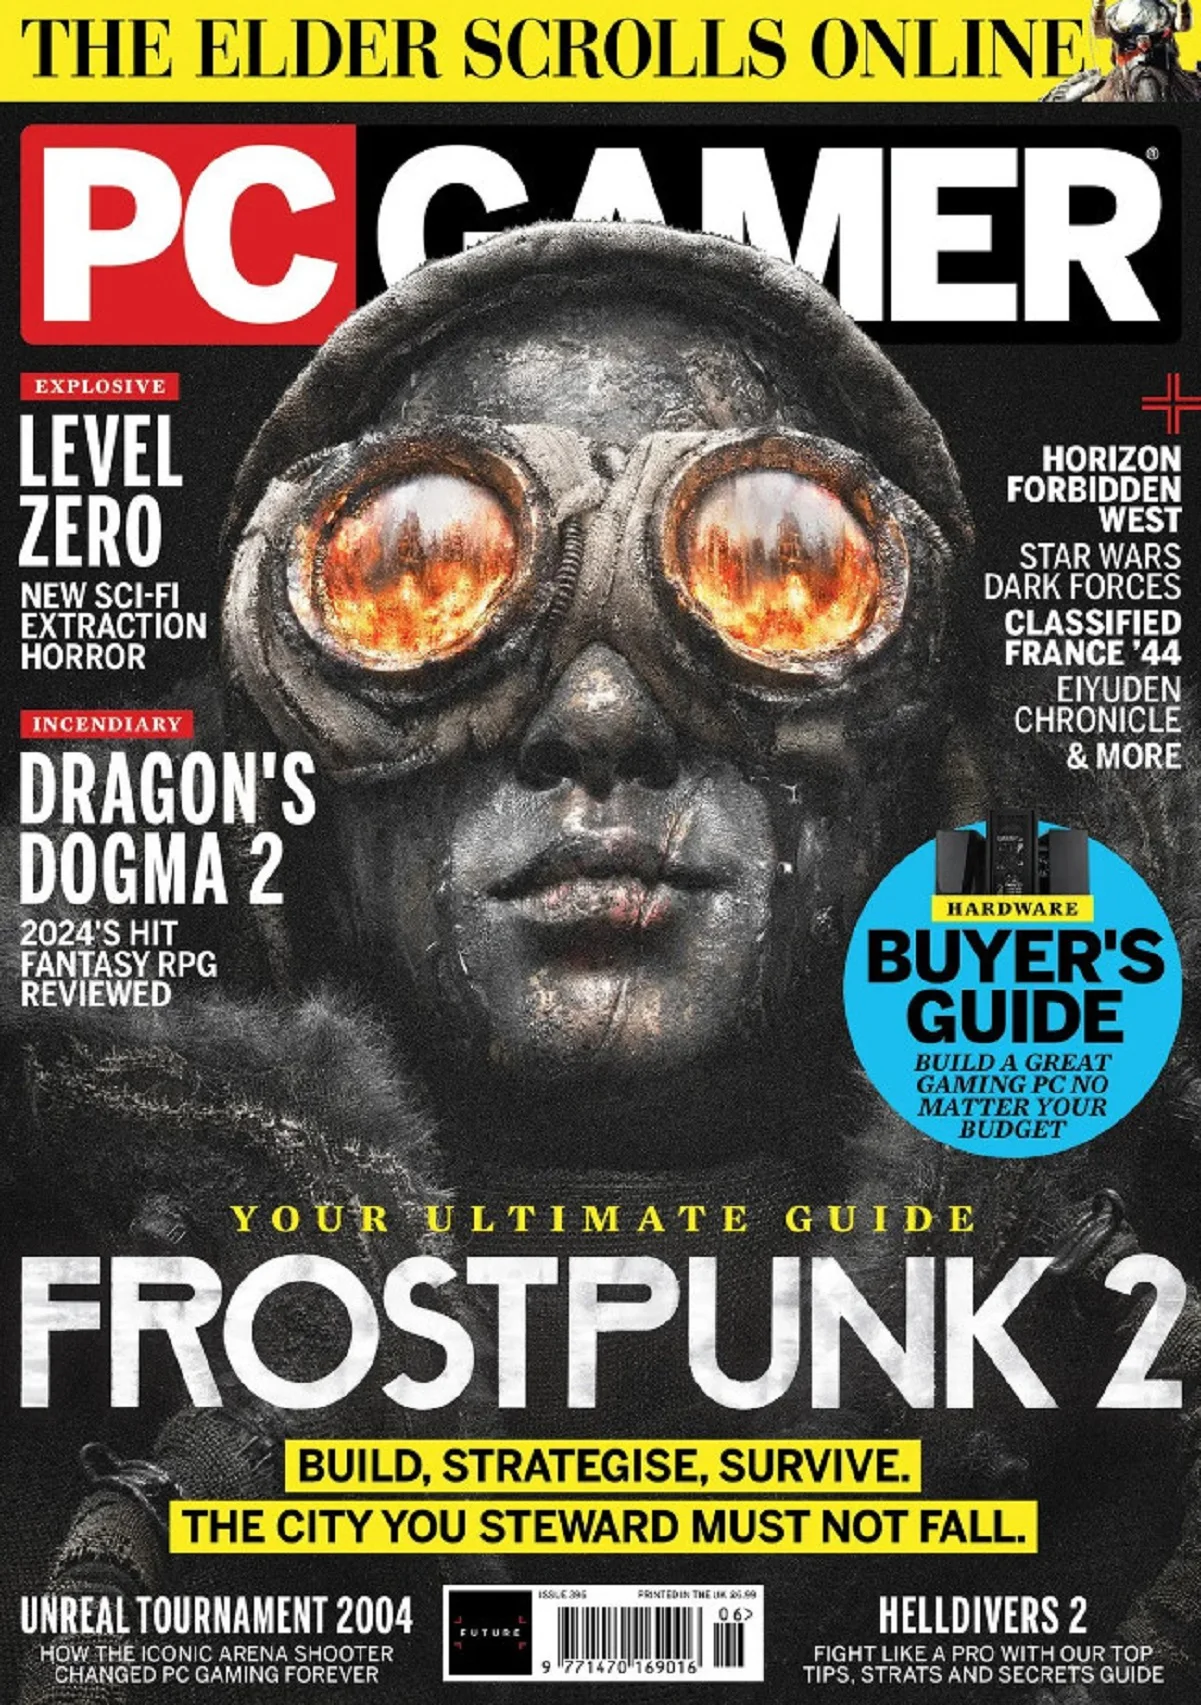 Стратегия Frostpunk 2 стала «лицом» обложки свежего номера PC Gamer - фото 1